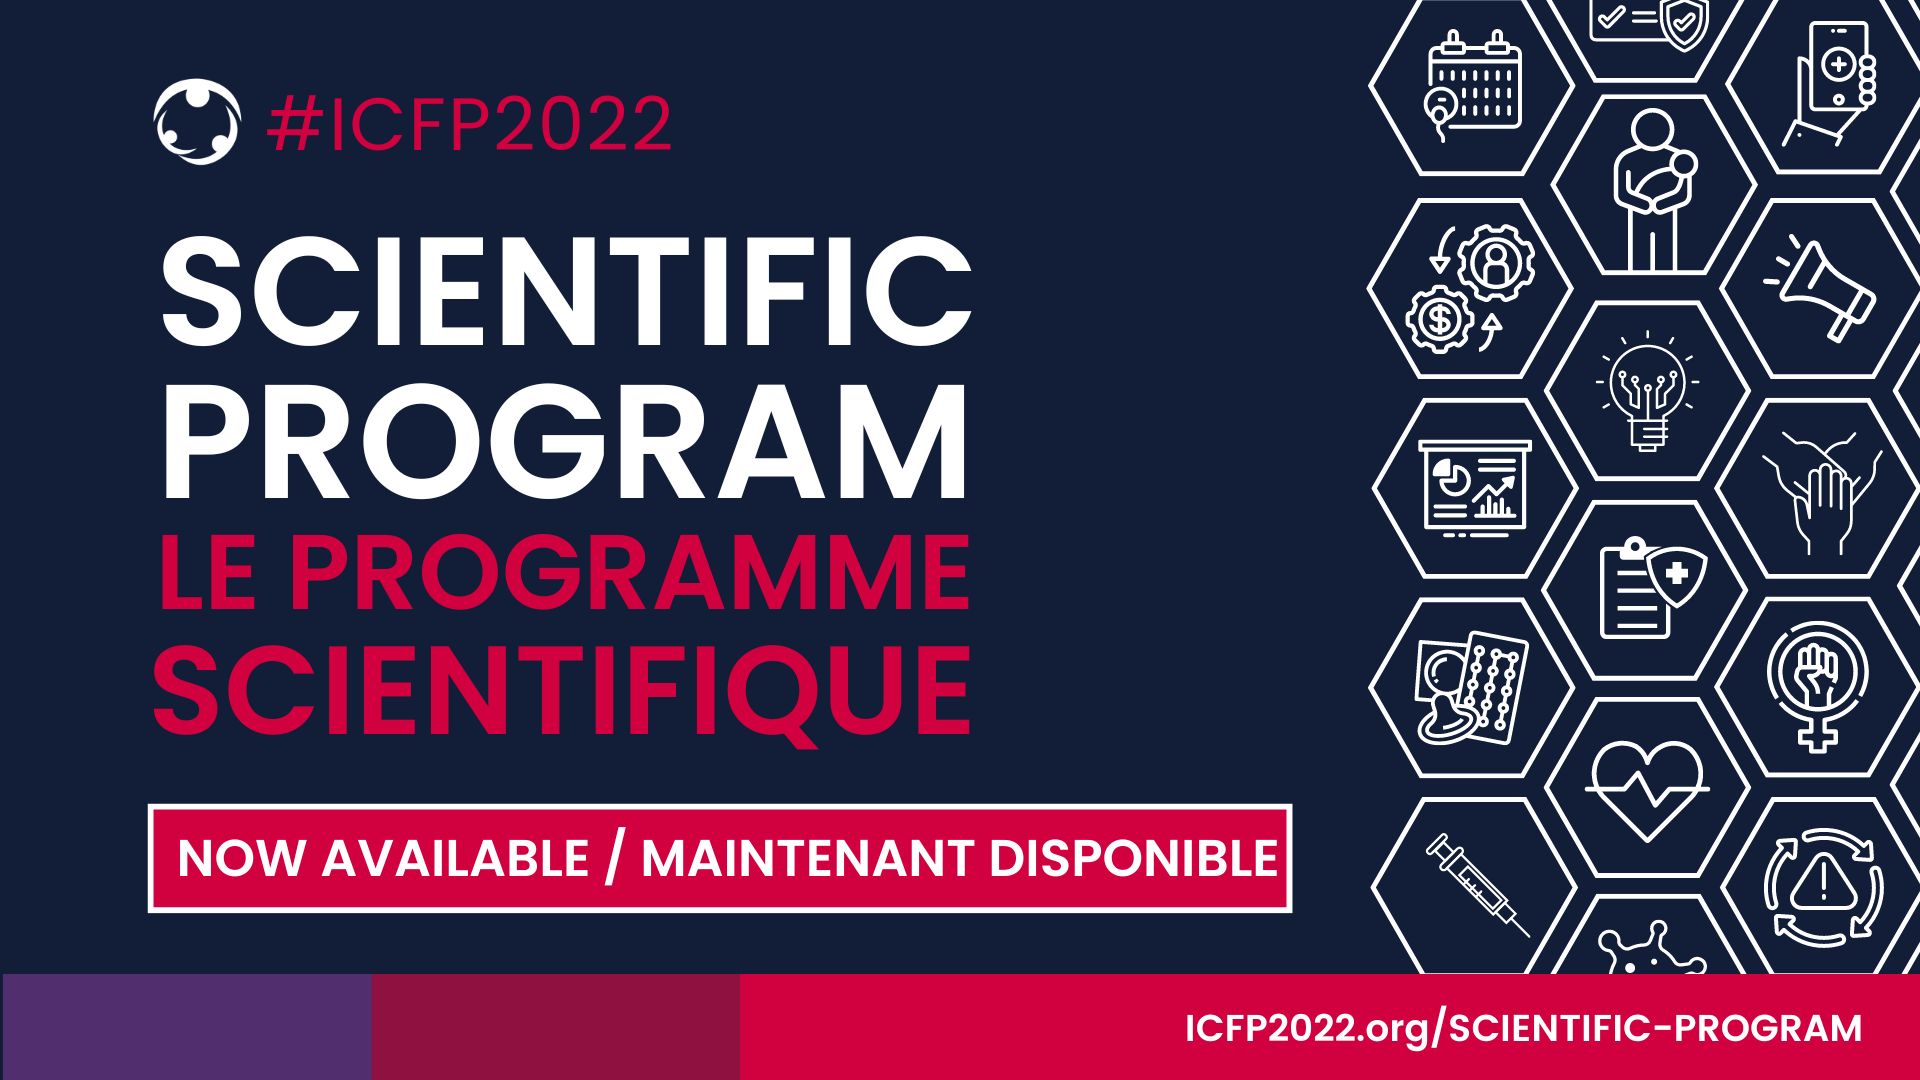 Introducing the ICFP2022 Scientific Program